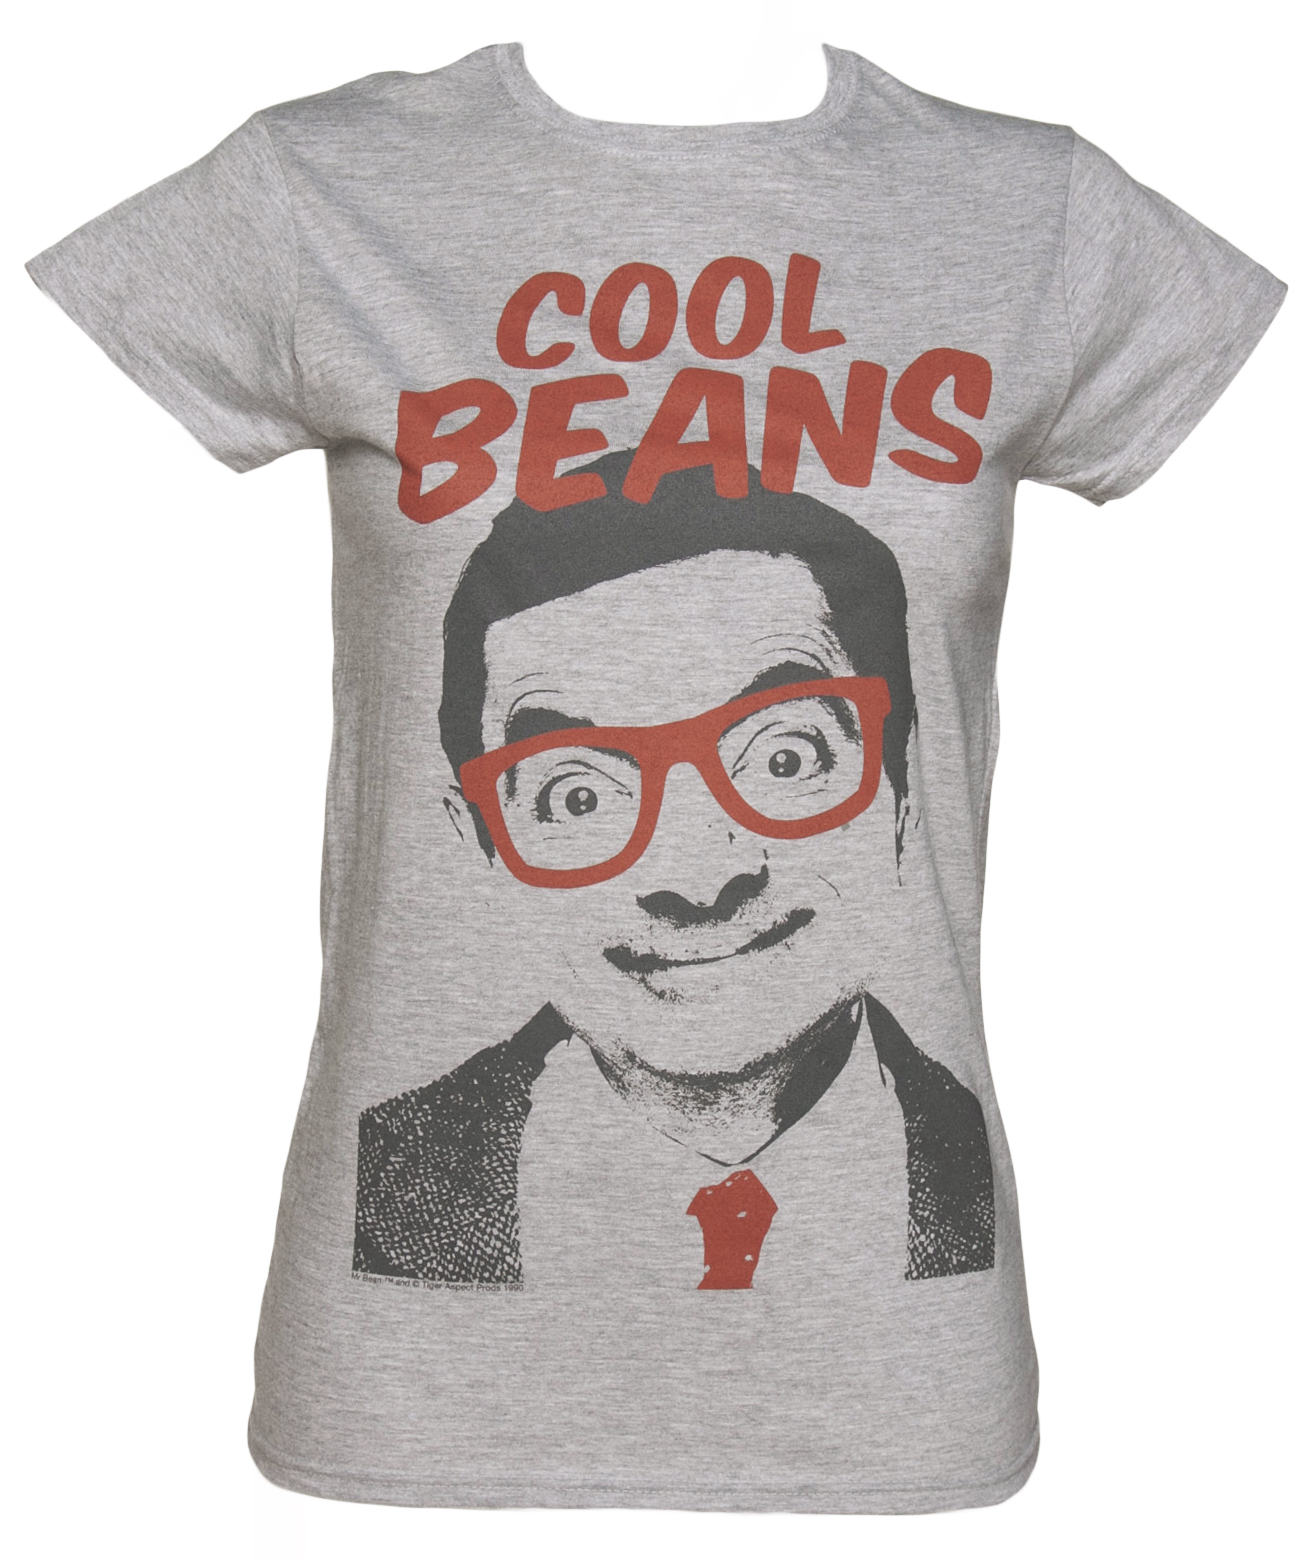 Ladies Mr Bean Cool Beans T-Shirt